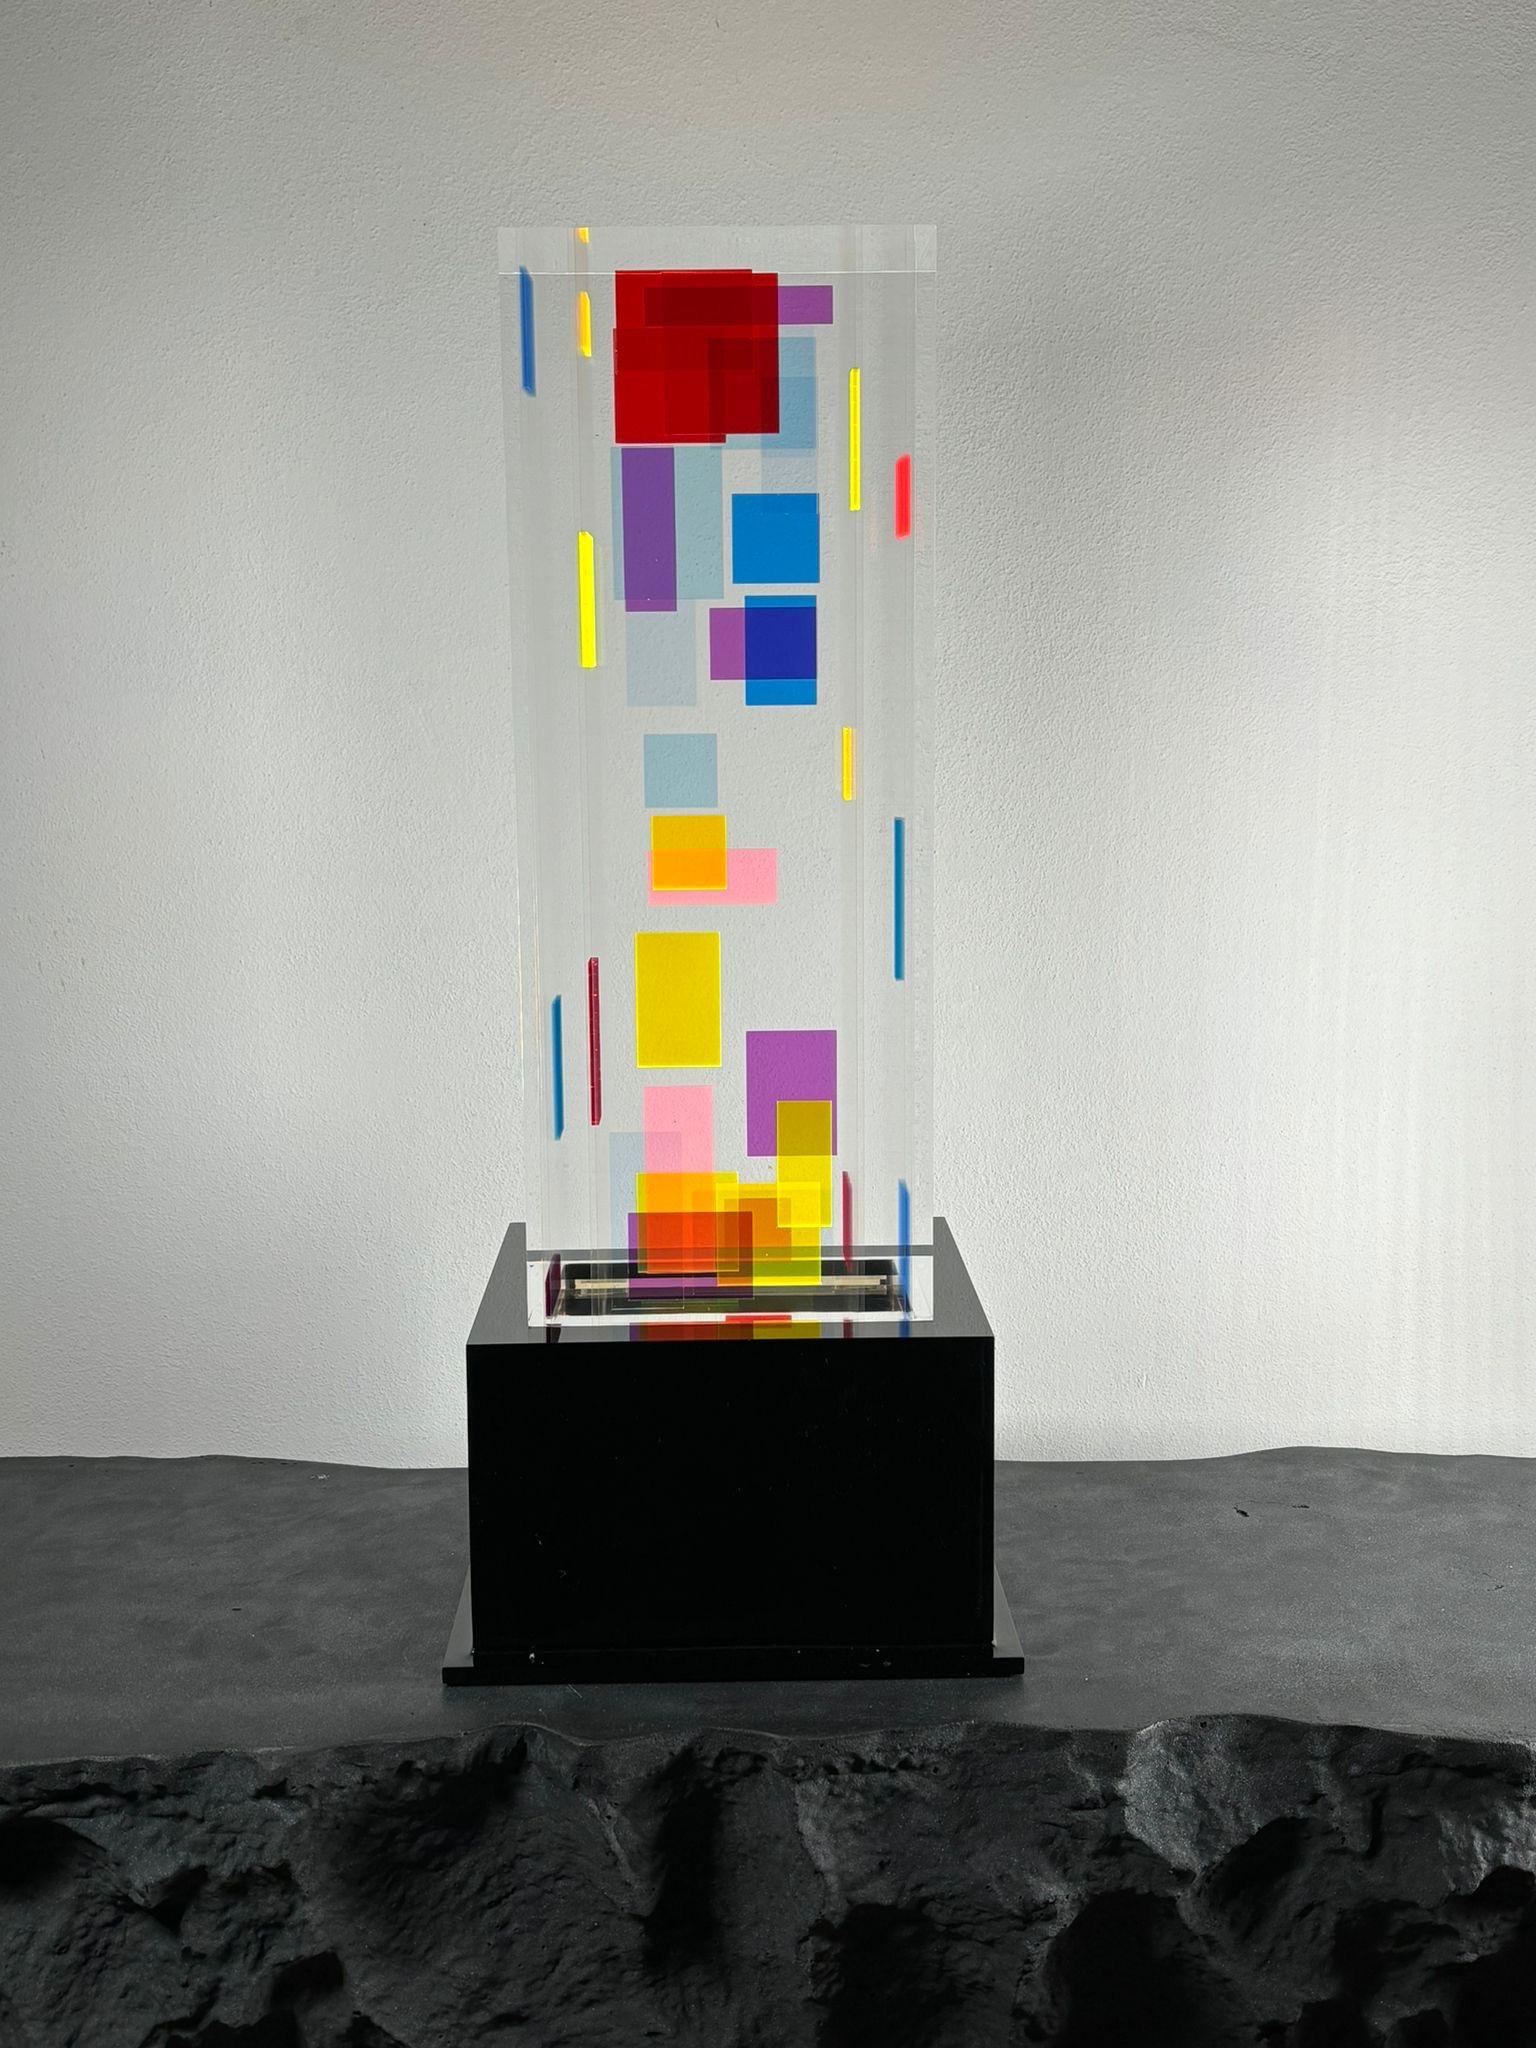 Lampe de table en plexiglas Modèle ADN conçu par Studio Superego pour Superego Editions. 
 
Biographie
Les éditions Superego sont nées en 2006, menant une activité constante de recherche dans le domaine des arts décoratifs en proposant des œuvres